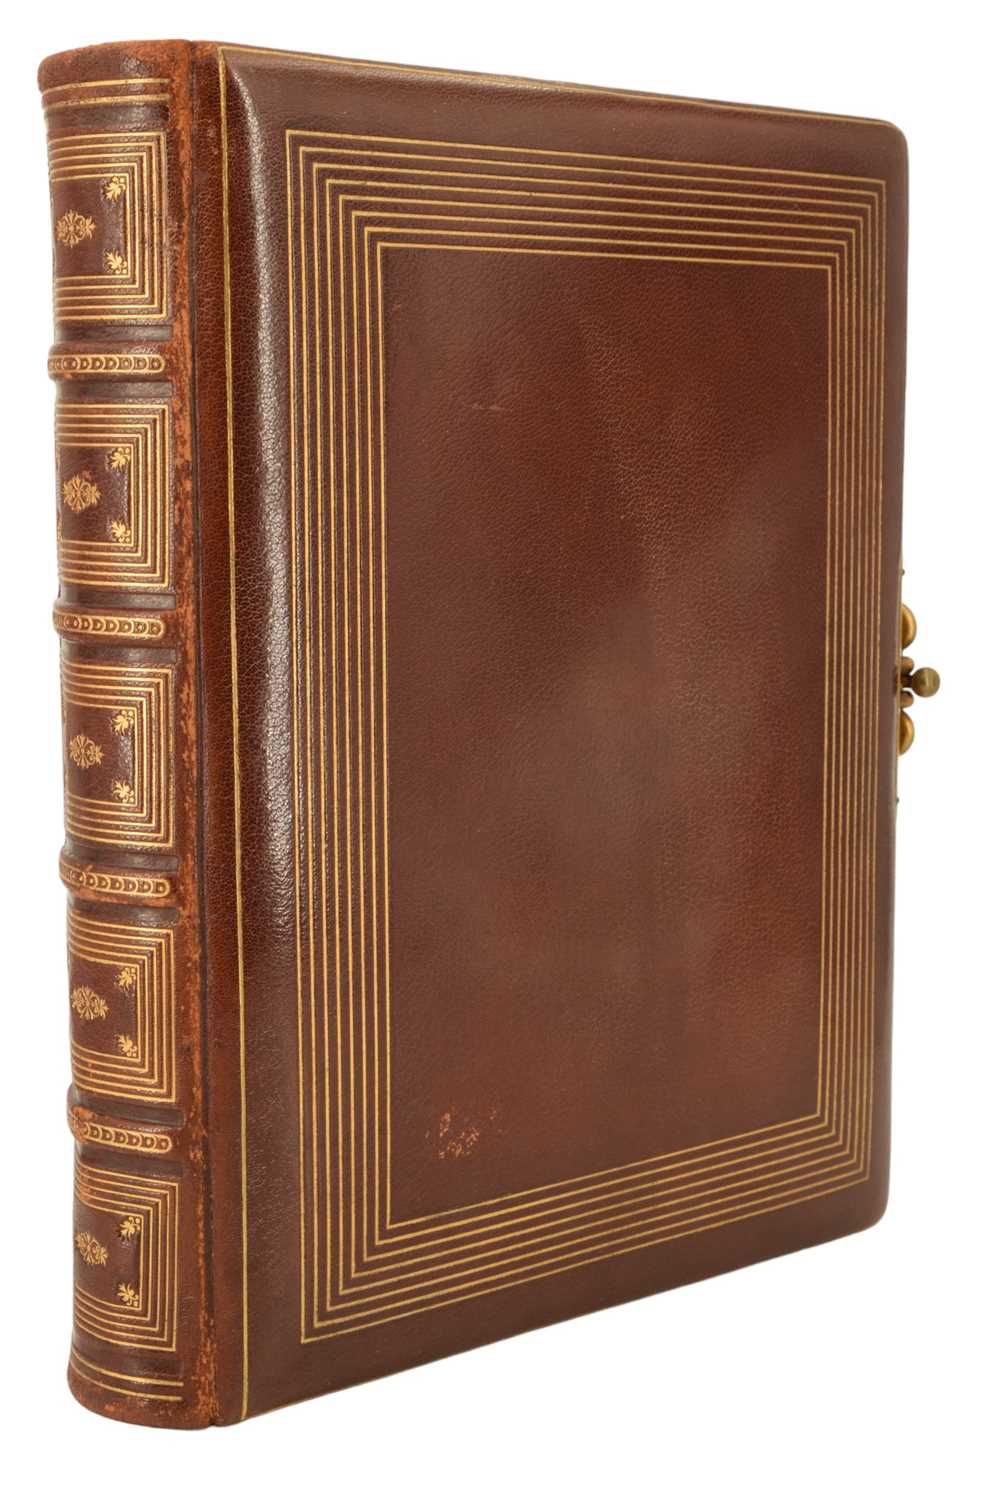 A Victorian hide-bound photograph album, 24 x 30 cm